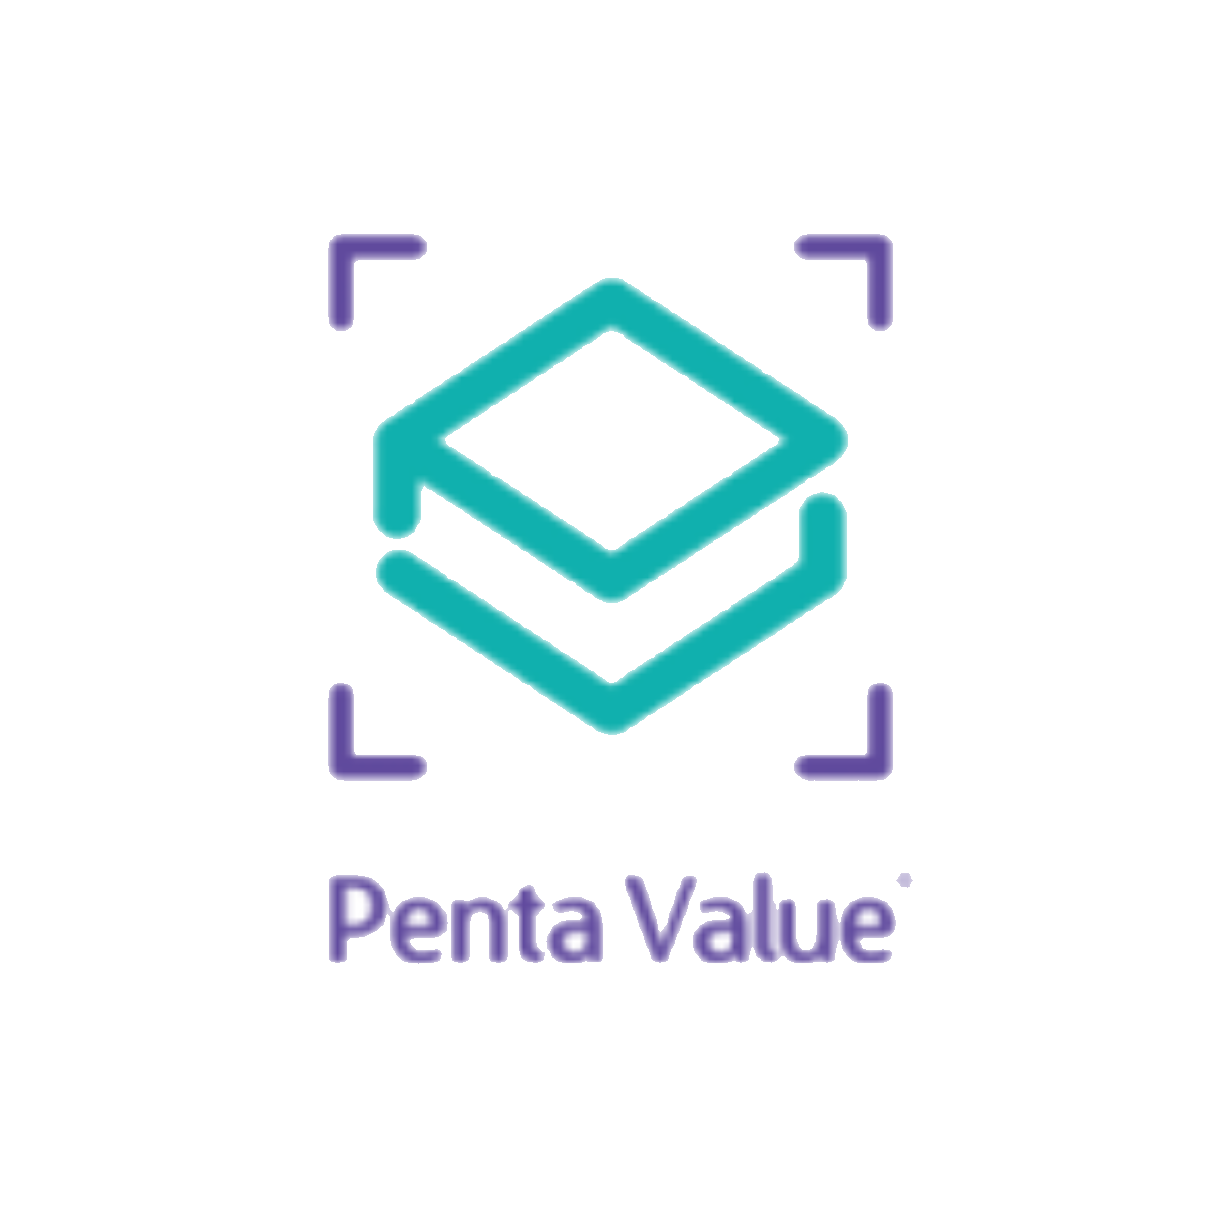 Penta Value Company